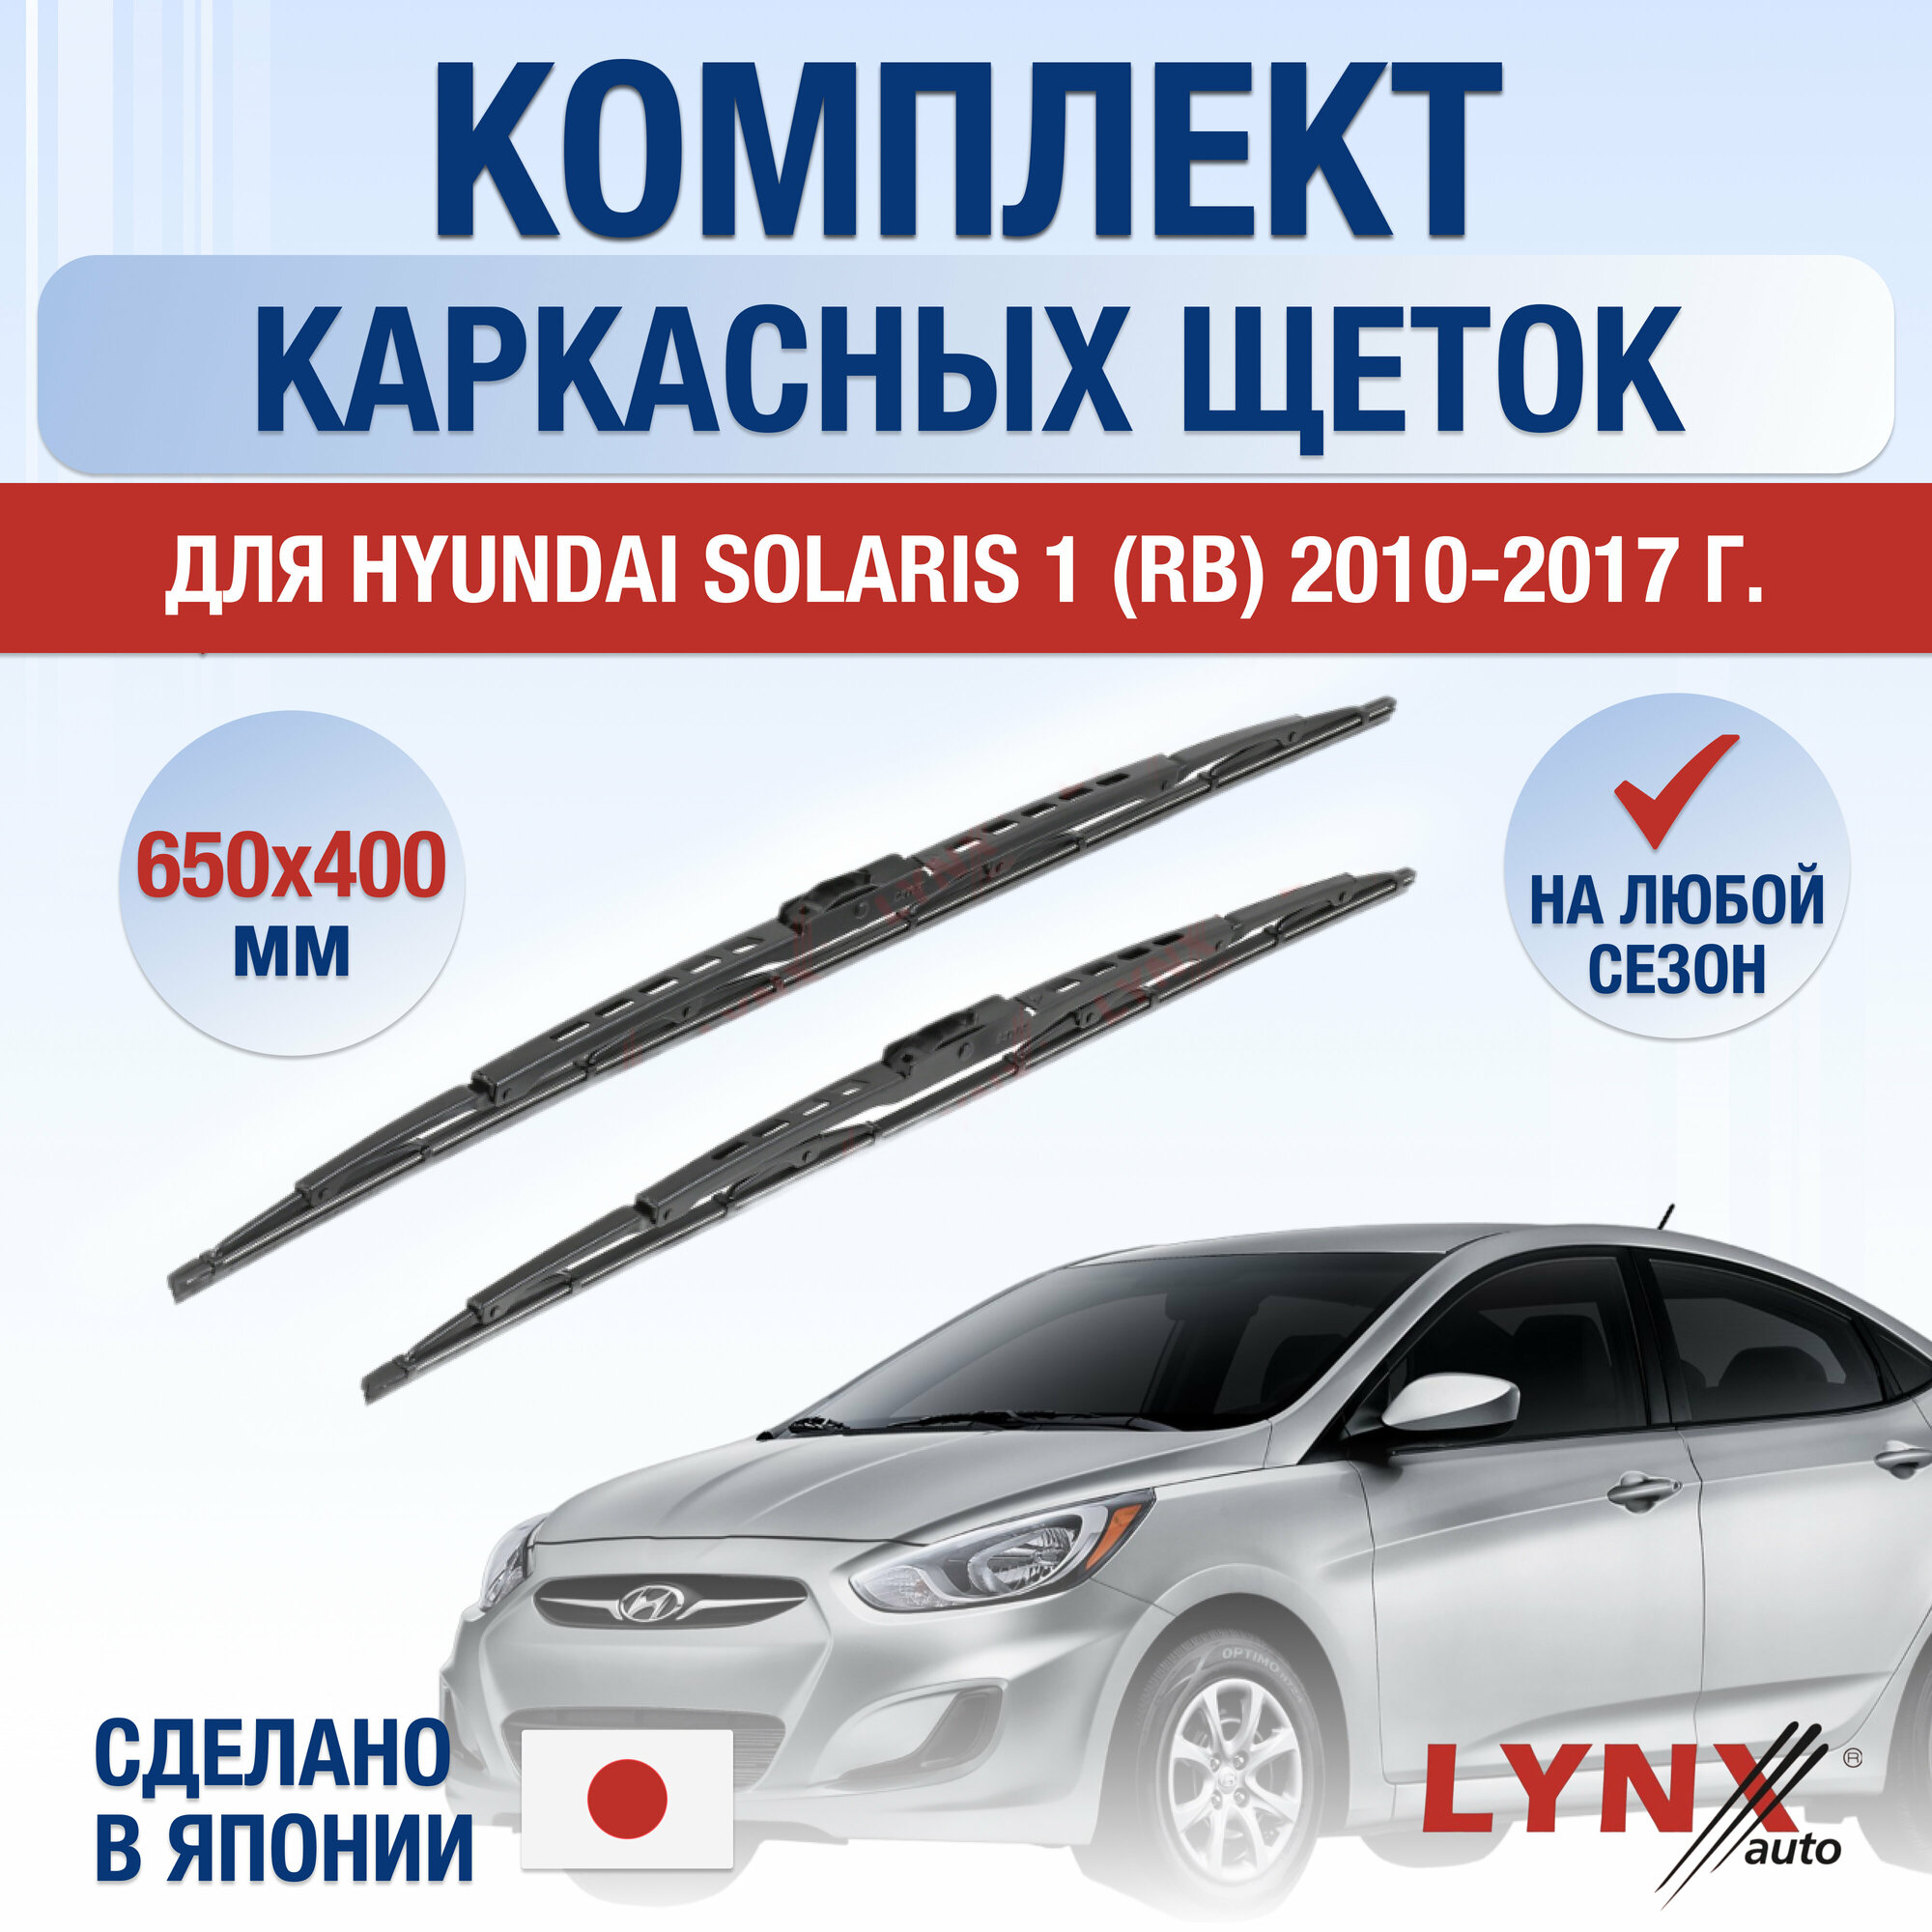 Щетки стеклоочистителя для Hyundai Solaris 1 (RB) / 2010 2011 2012 2013 2014 2015 2016 2017 / Комплект каркасных дворников 650 400 мм Хендай Солярис